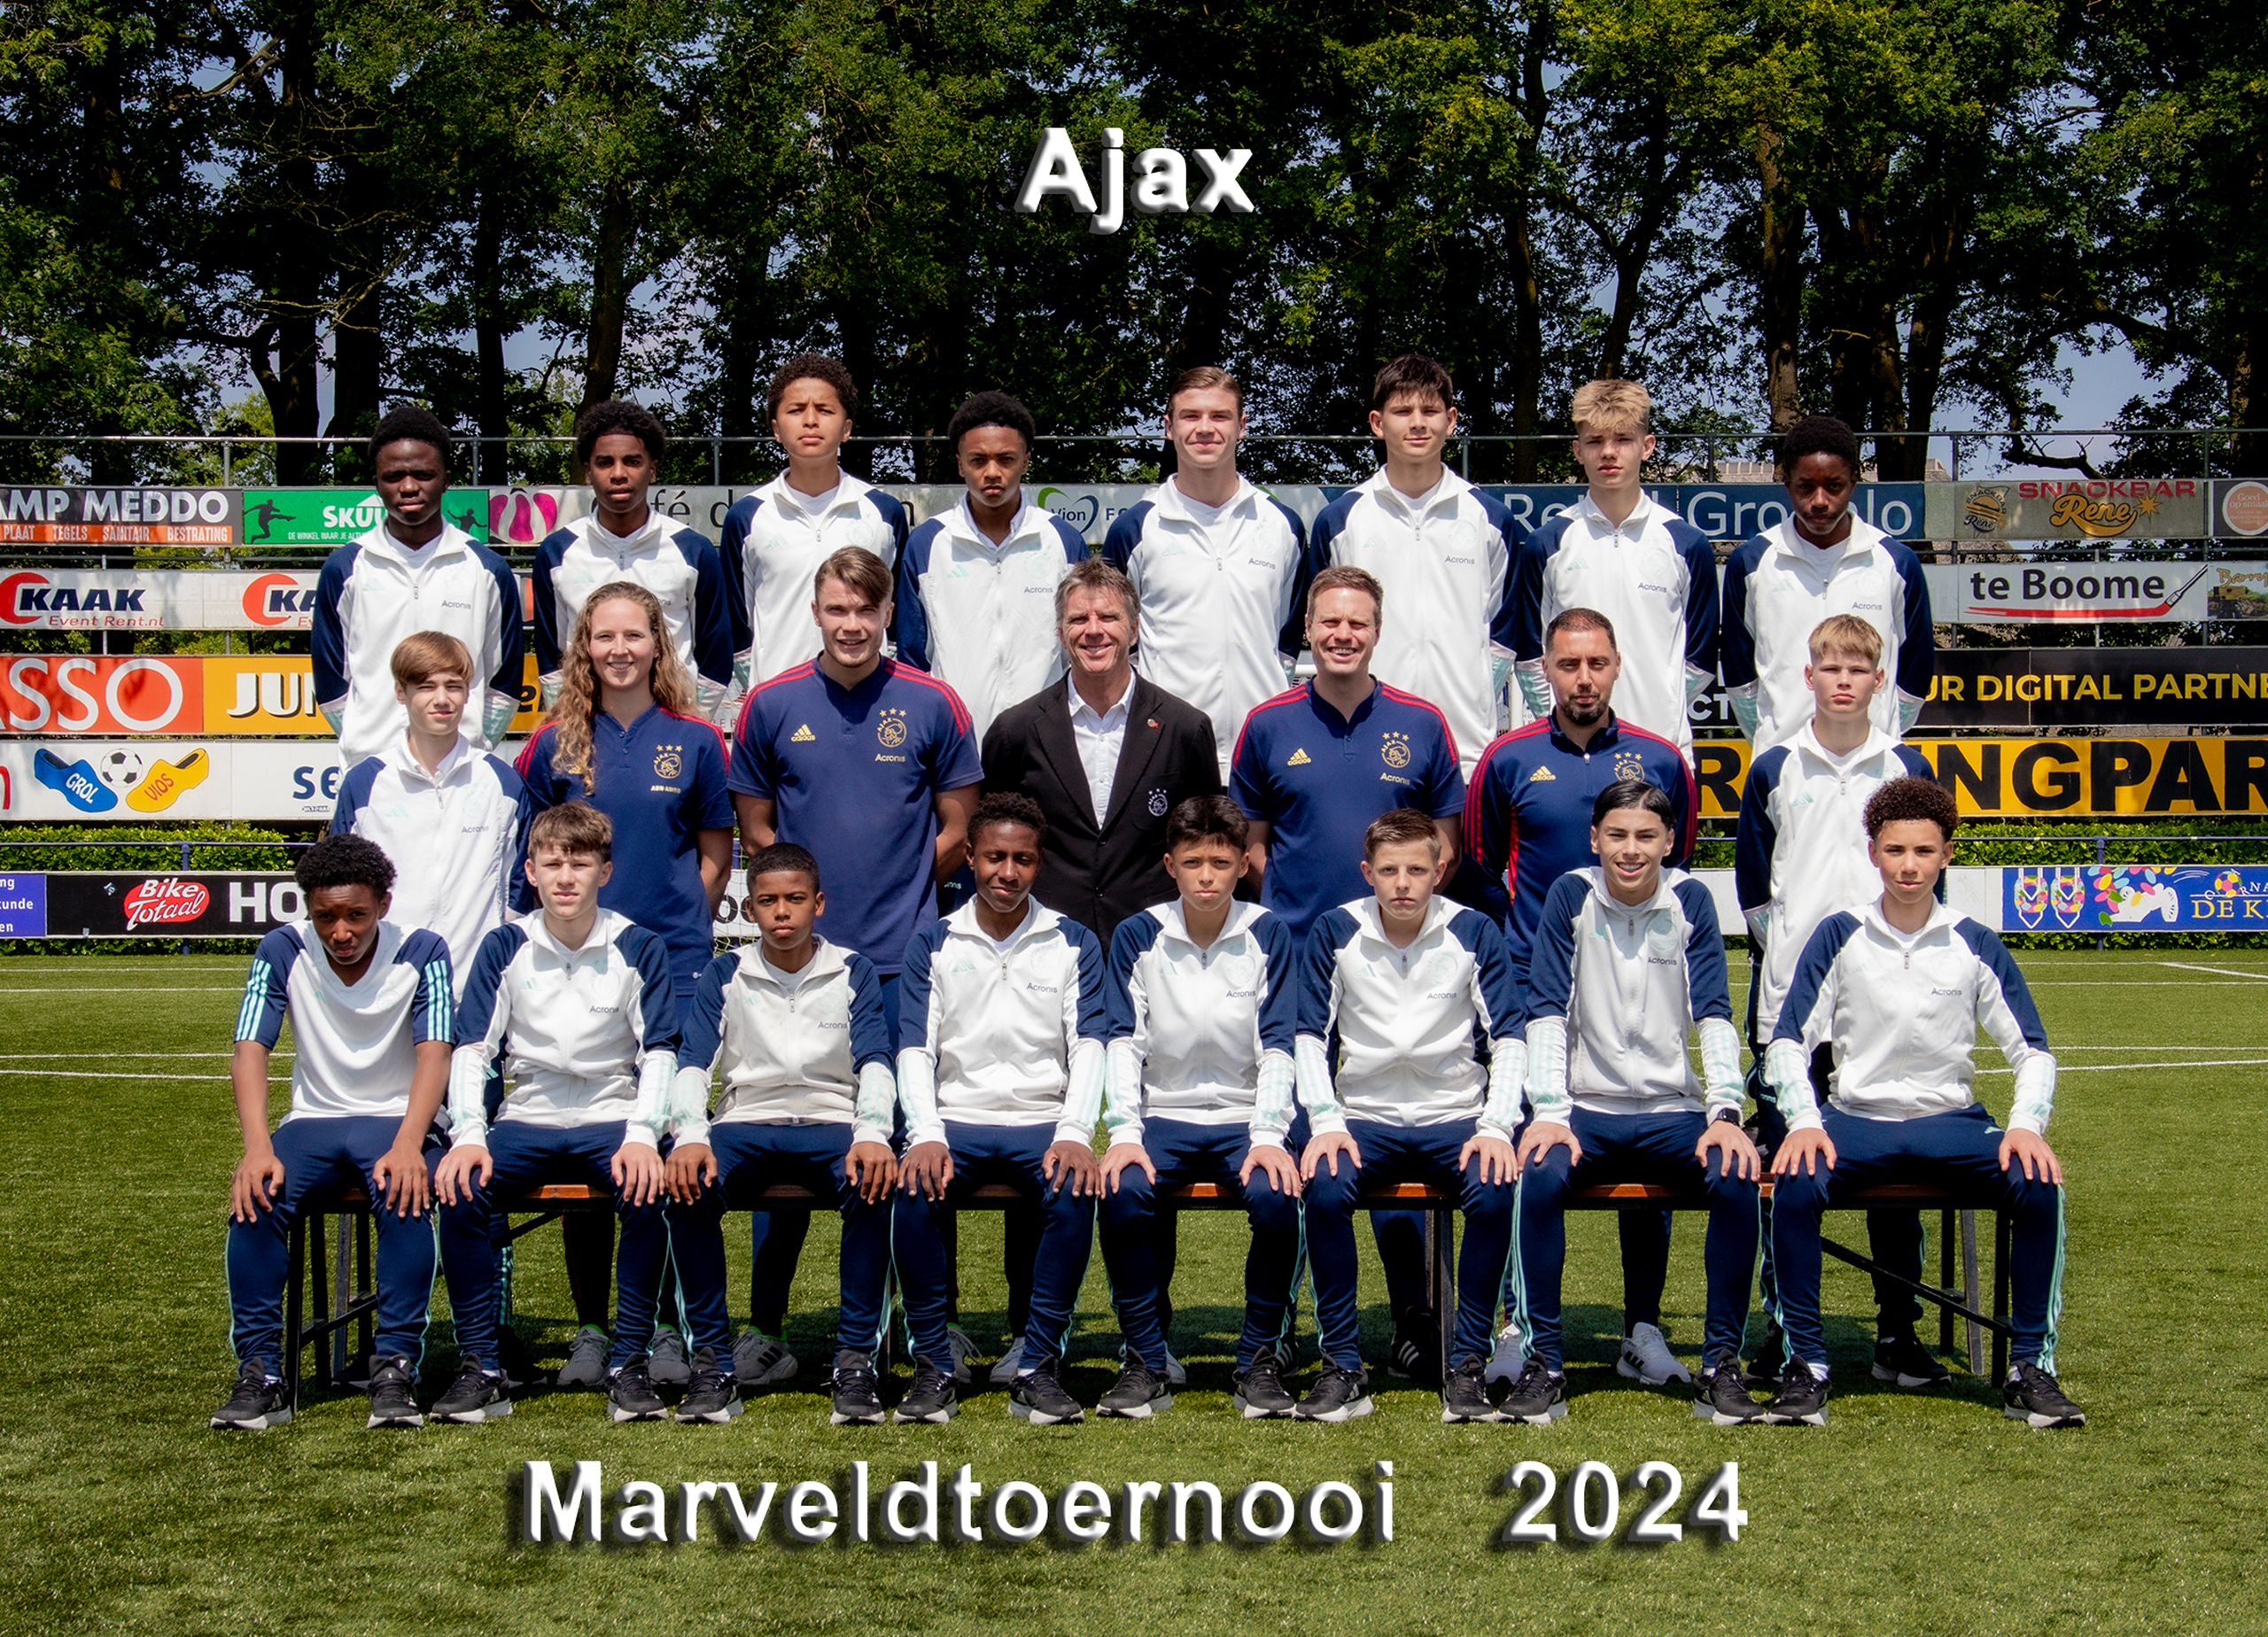 Marveld Tournament 2024 - Team Ajax